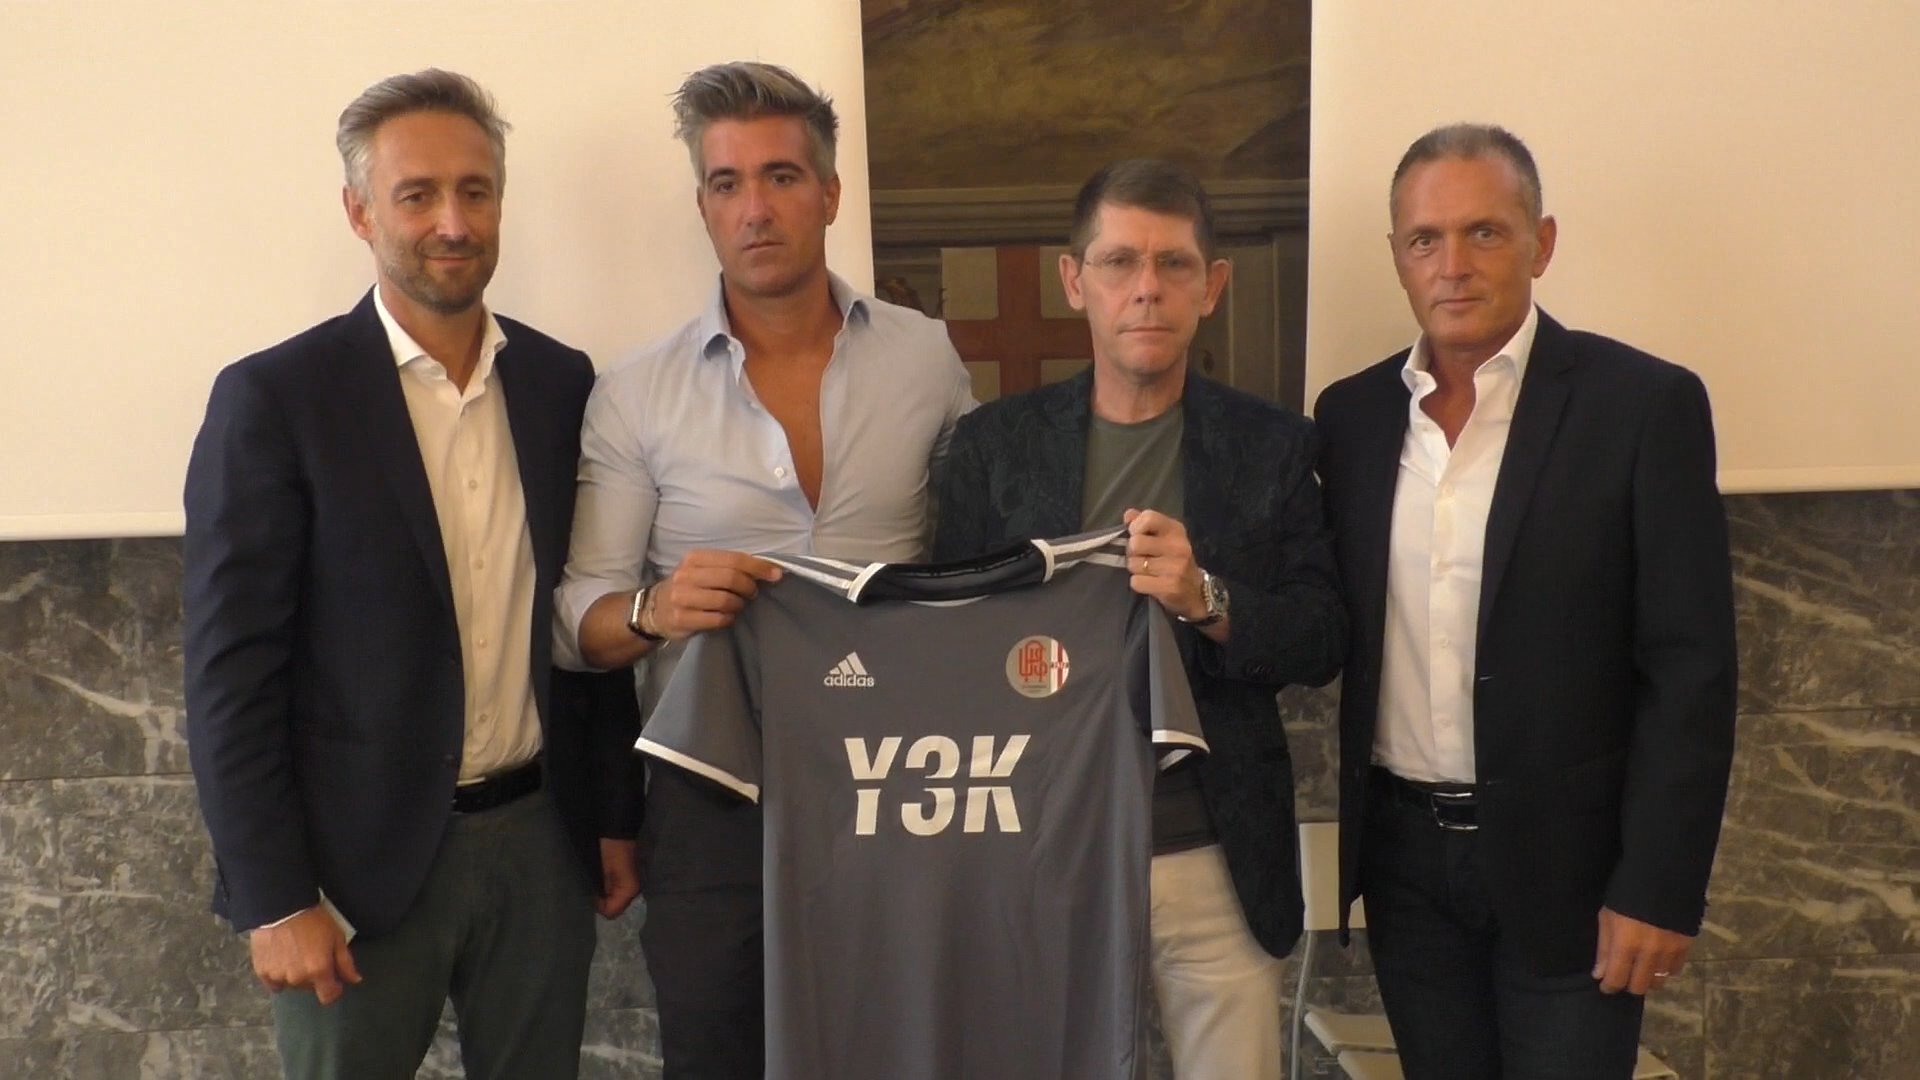 Alessandria Calcio tra novità e continuità, Y3K è il main sponsor: “Da 7 anni con Roberto Molino”